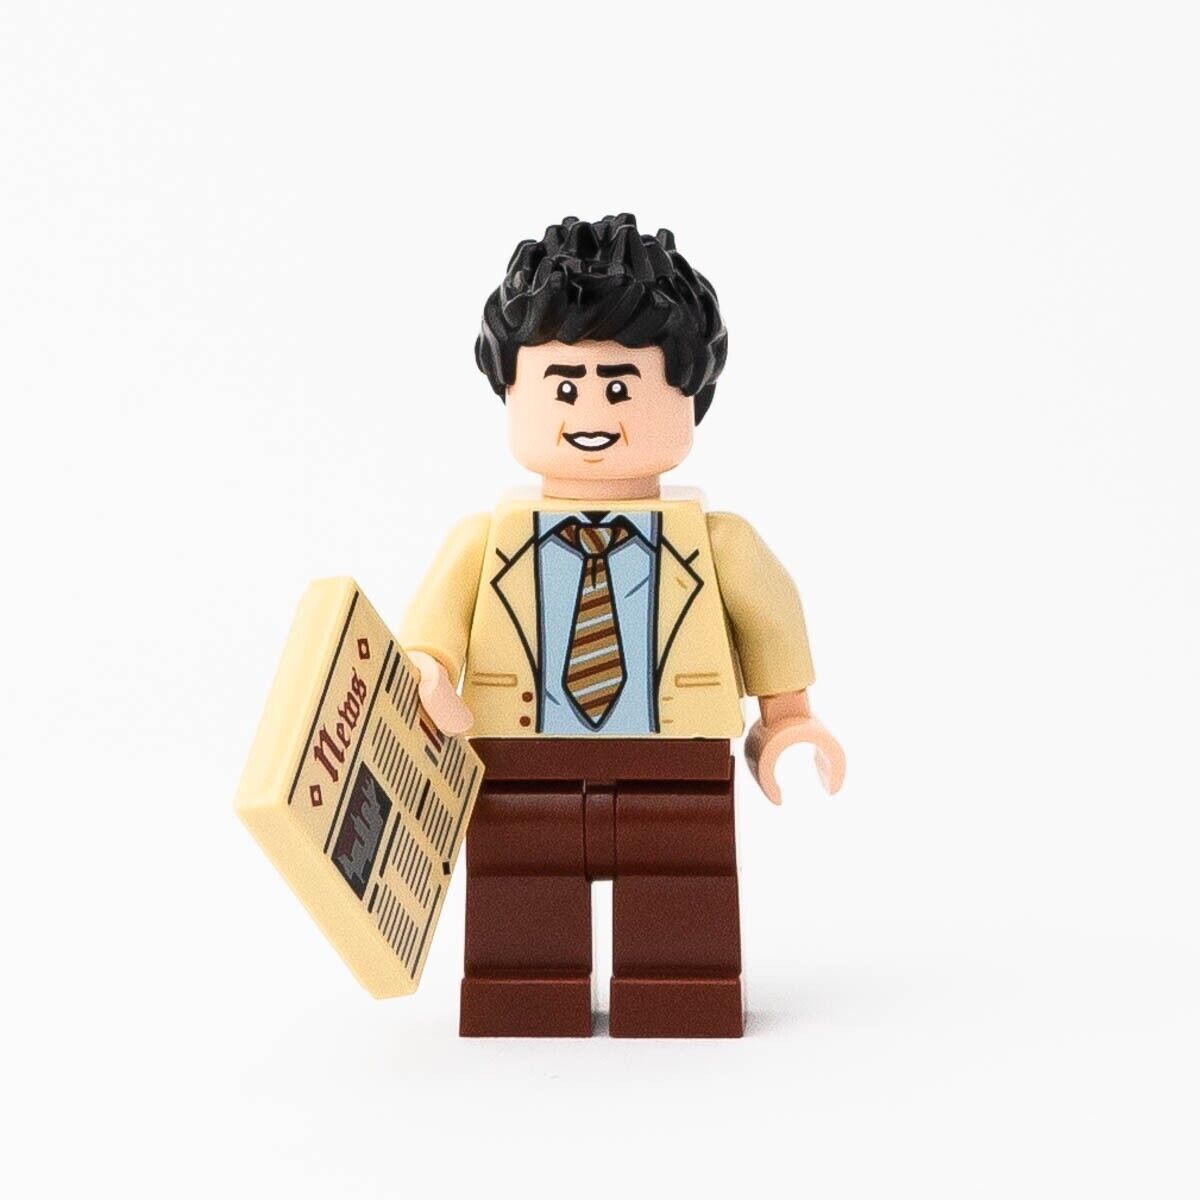 New LEGO Ross Geller Minifigure - FRIENDS Central Perk - 21319 (idea056)